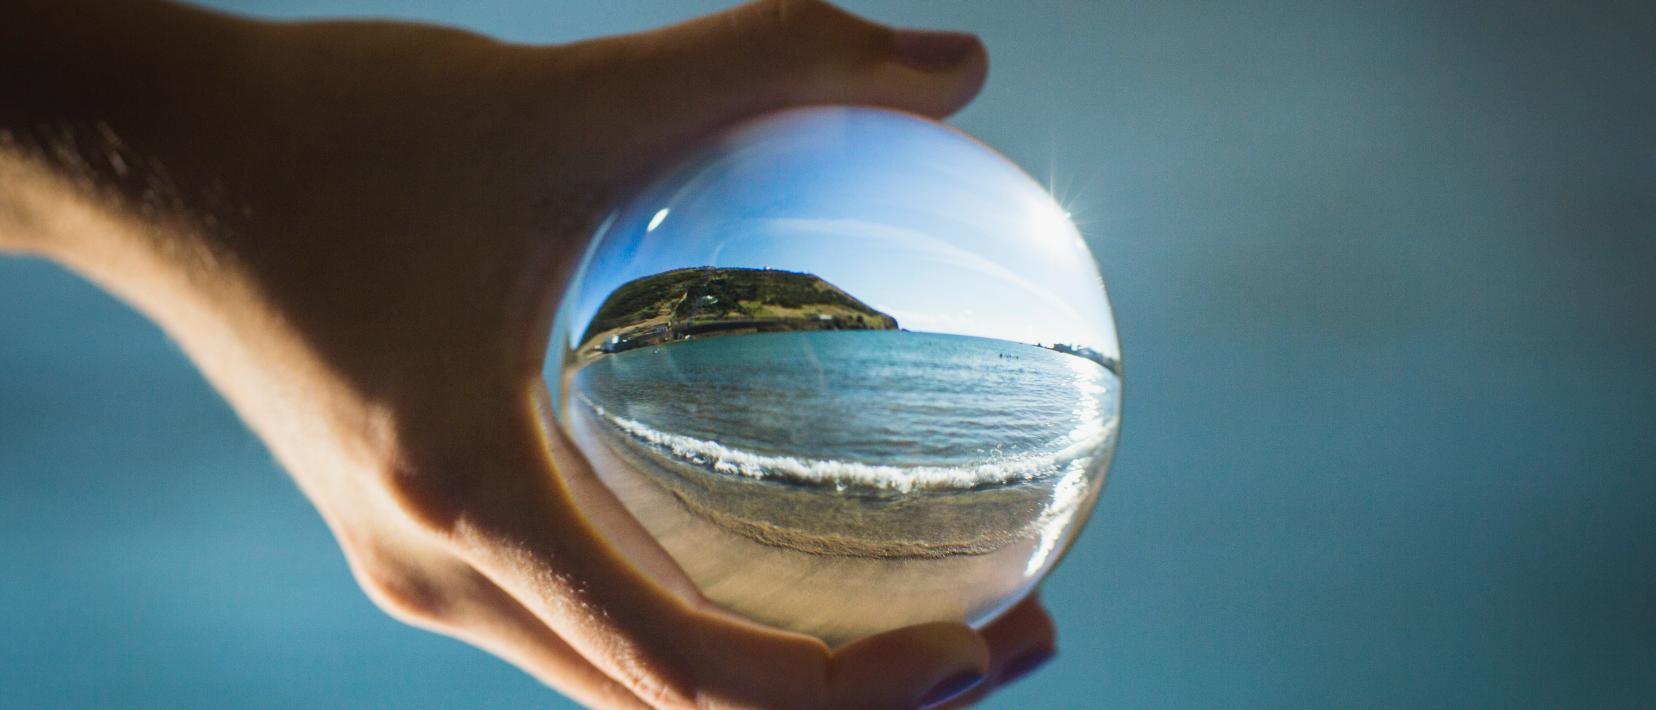 Eine Uferlandschaft durch eine Glaskugel hindurch fotografiert.